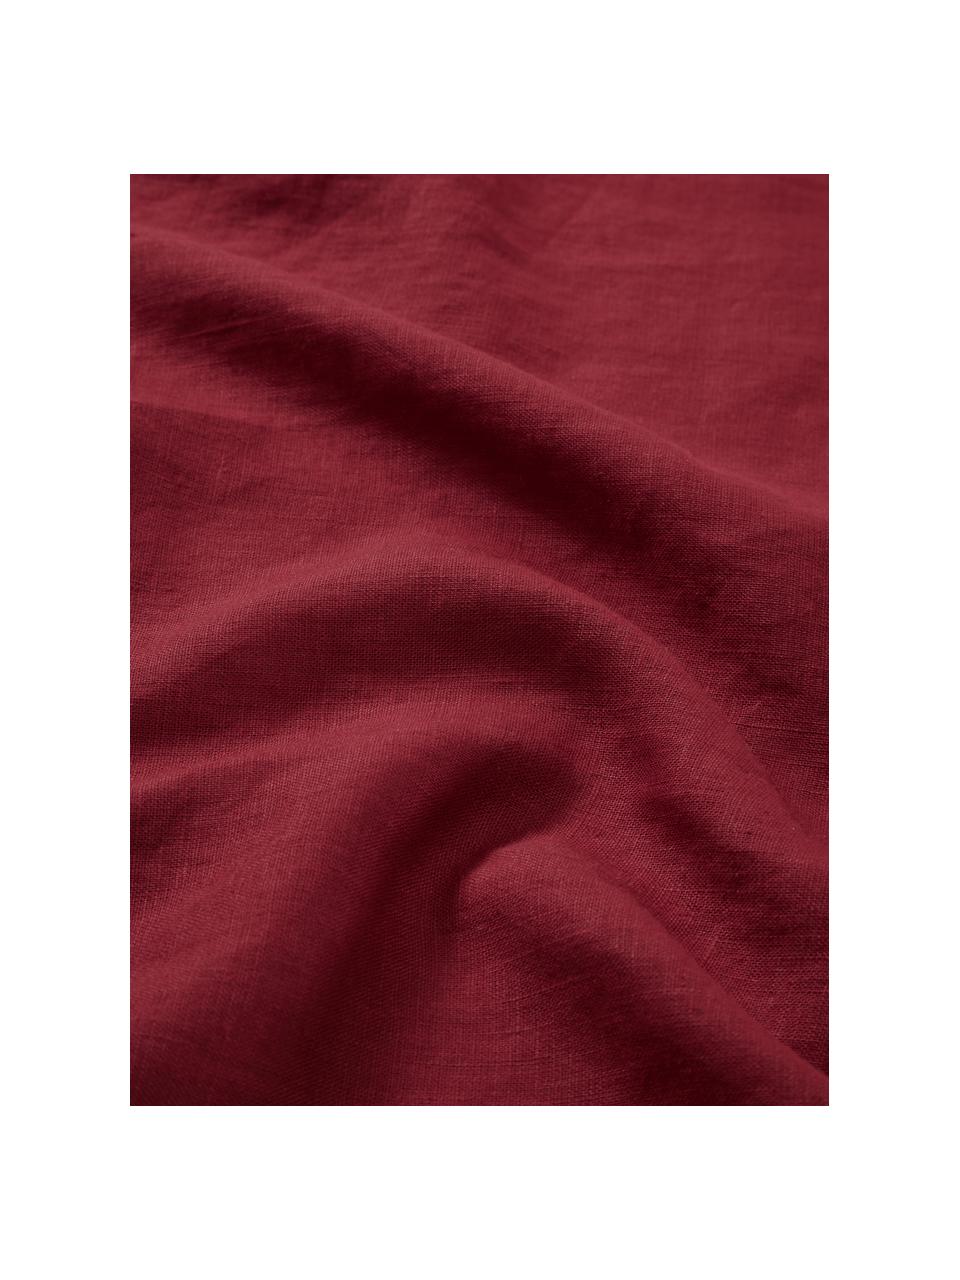 Camino de mesa de lino Pembroke, 100% lino, Rojo, An 40 x L 150 cm